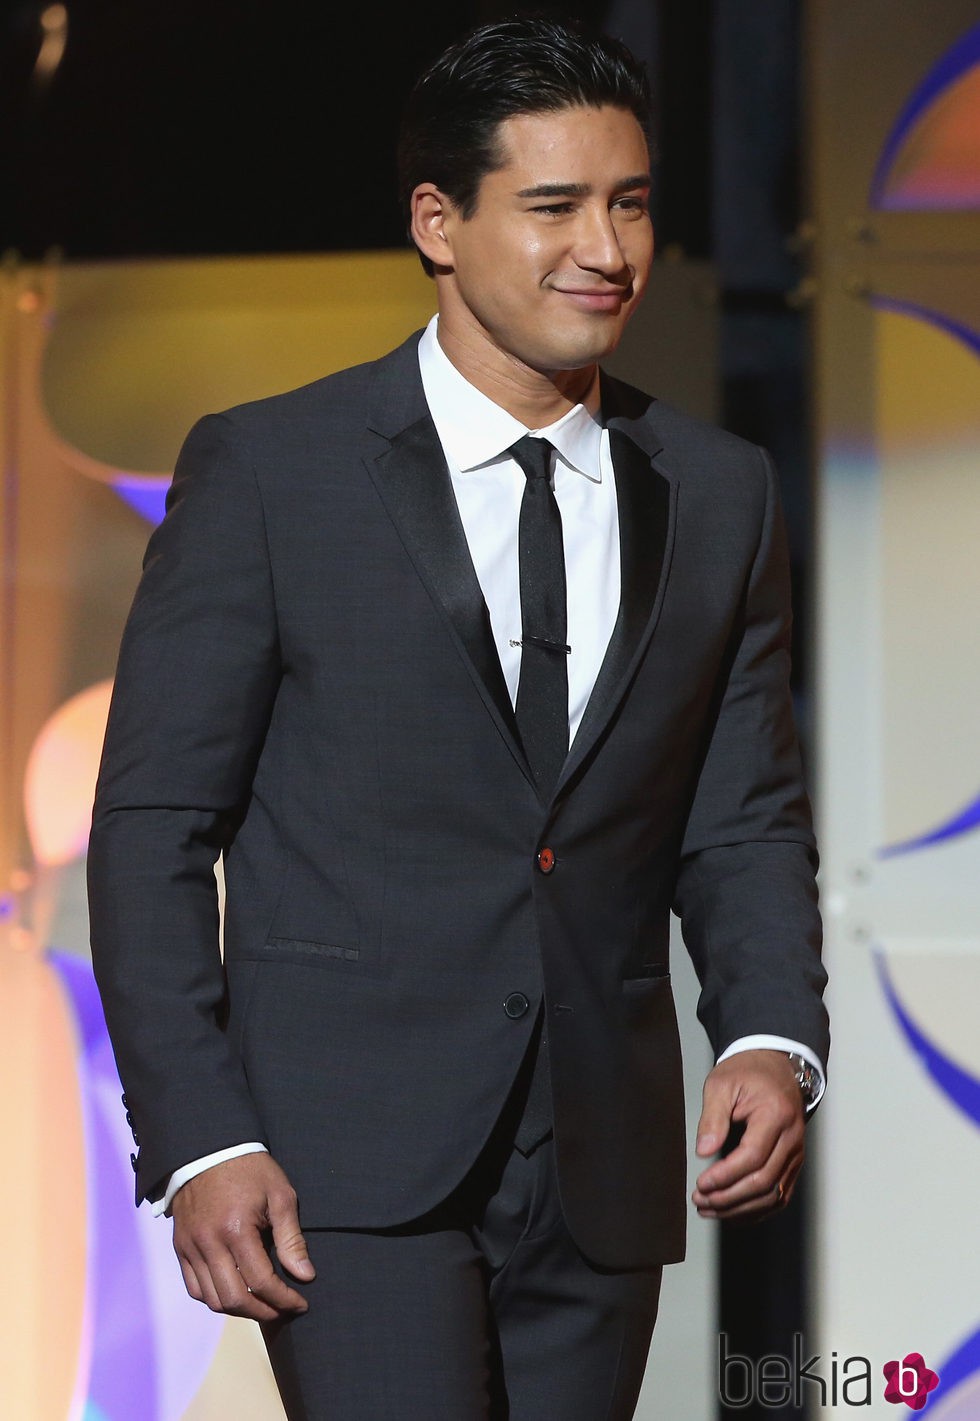 Mario Lopez en la gala de los 'Daytime Emmys' 2015